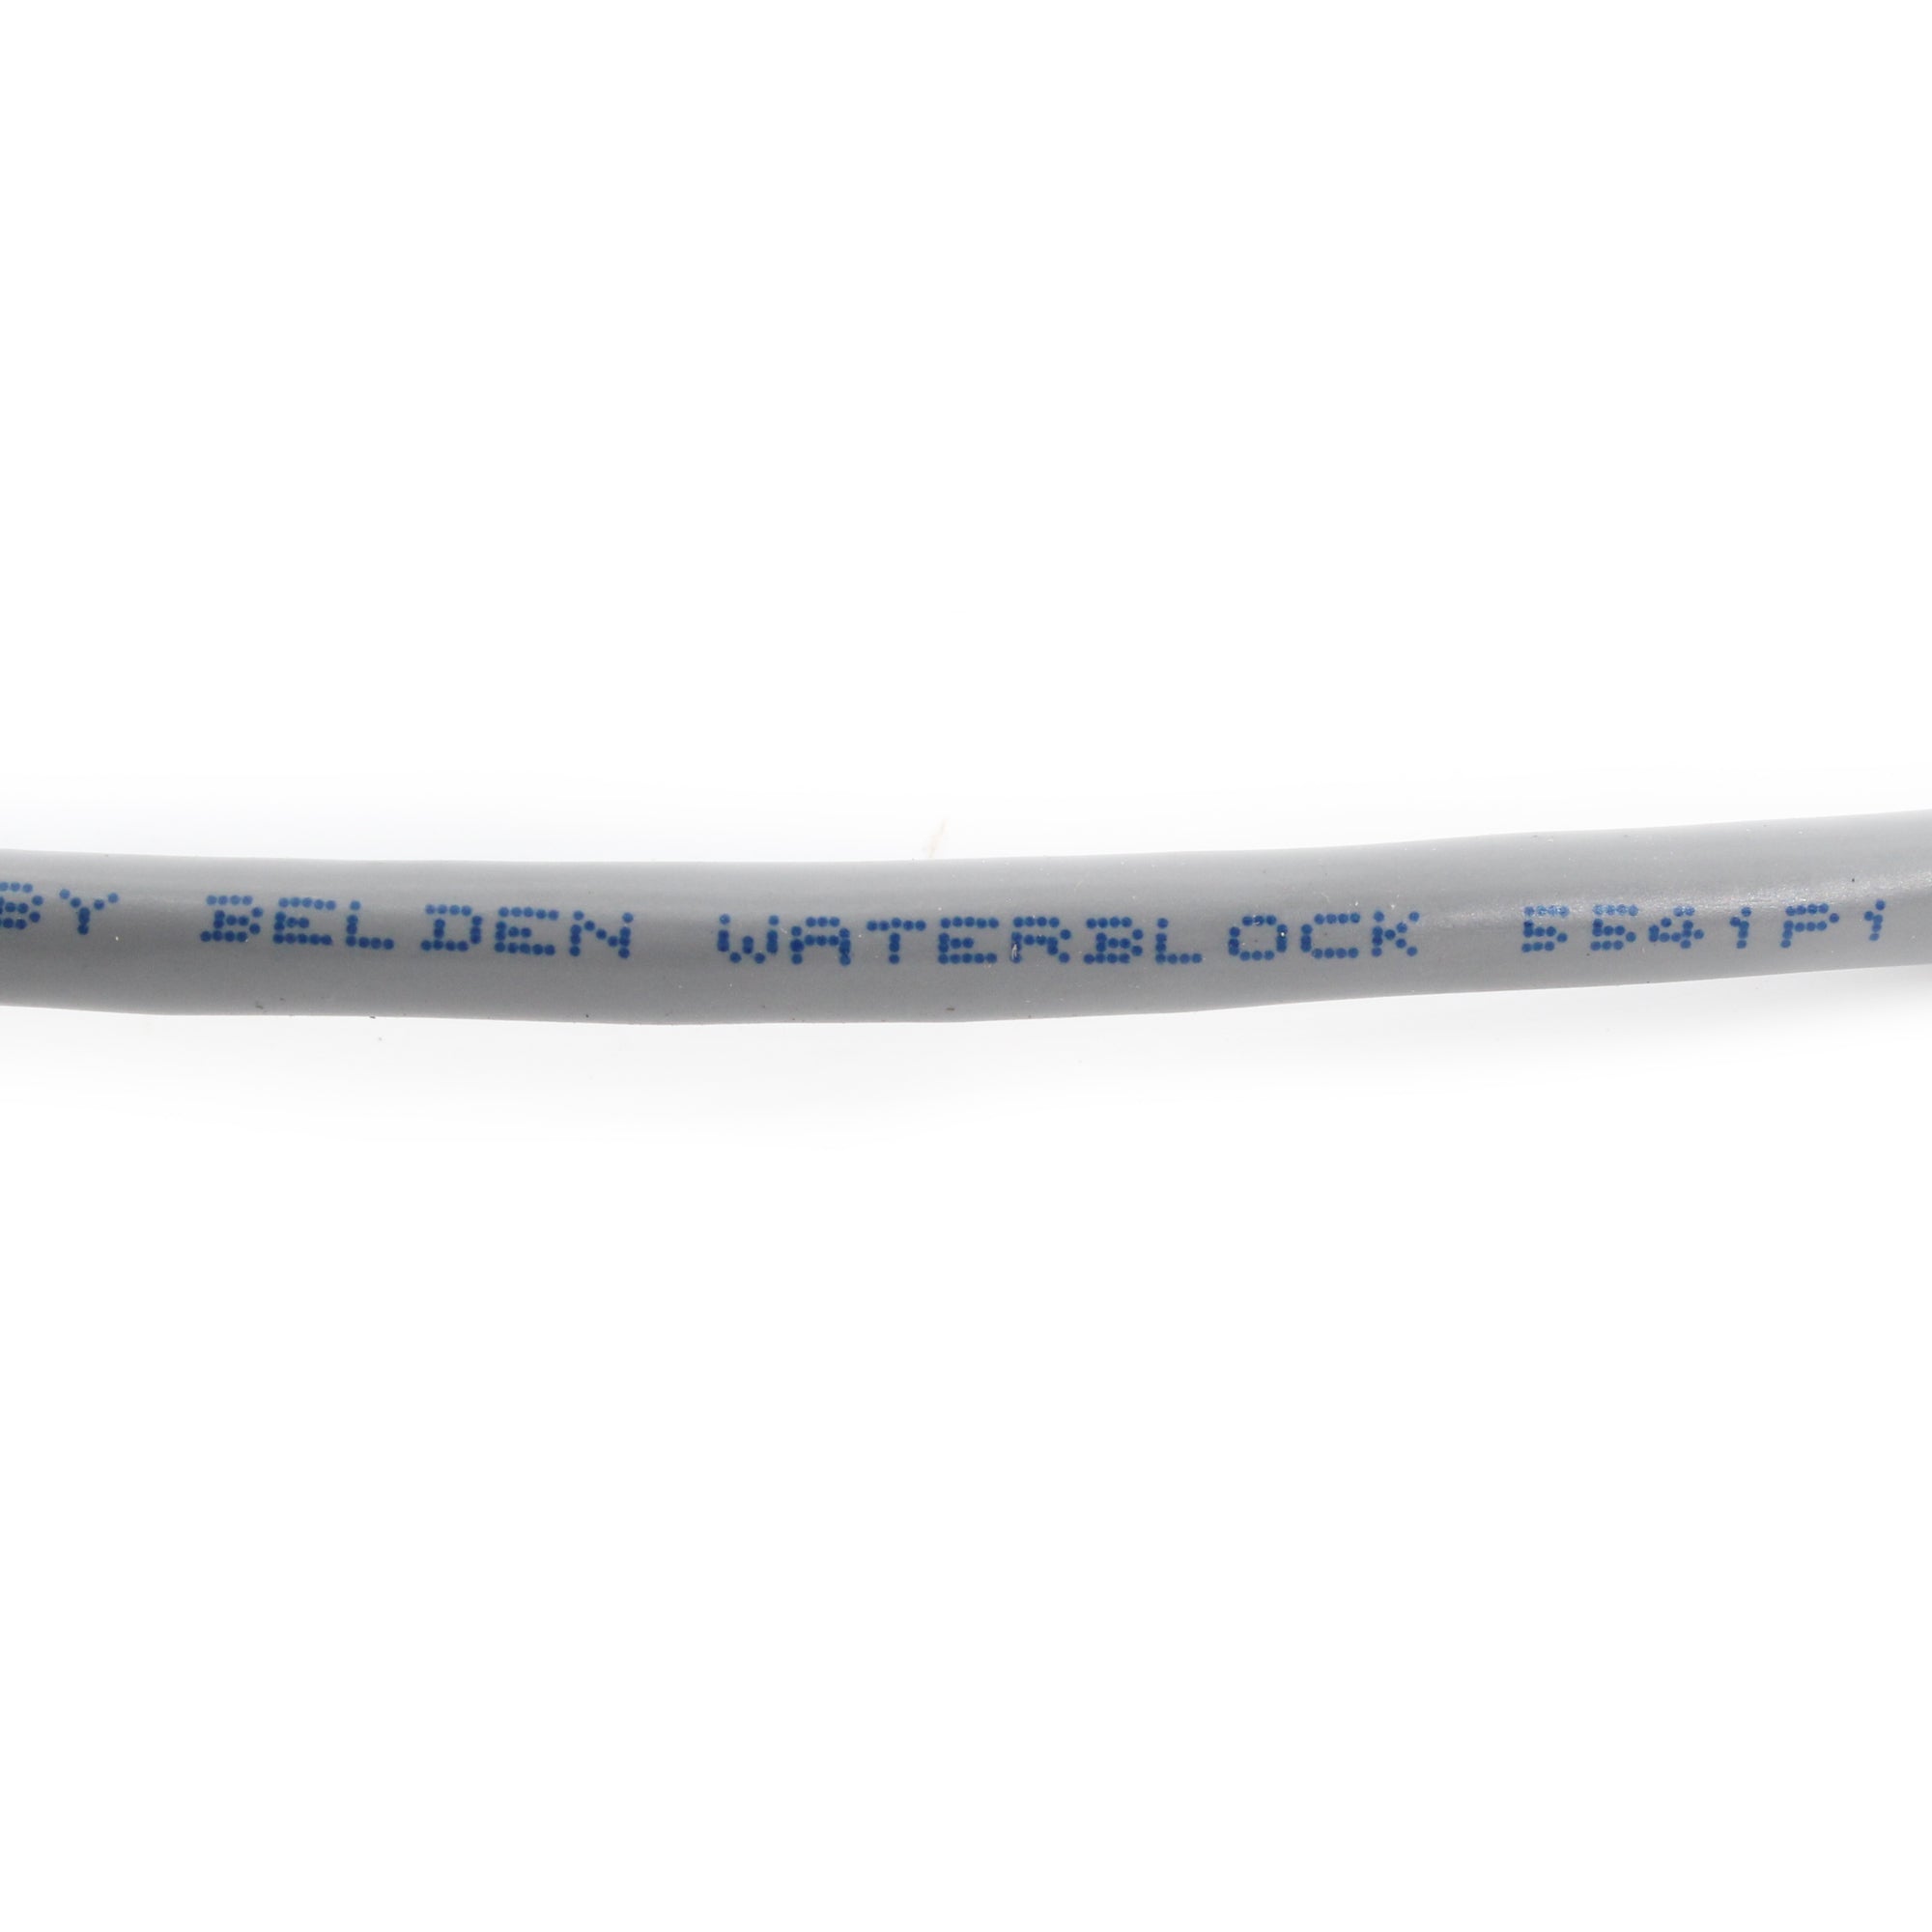 Belden, BELDEN 5541P1-008 WATER-BLOCKED INDOOR/OUTDOOR CABLE, 22/4C, 22-AWG, 1000-FT